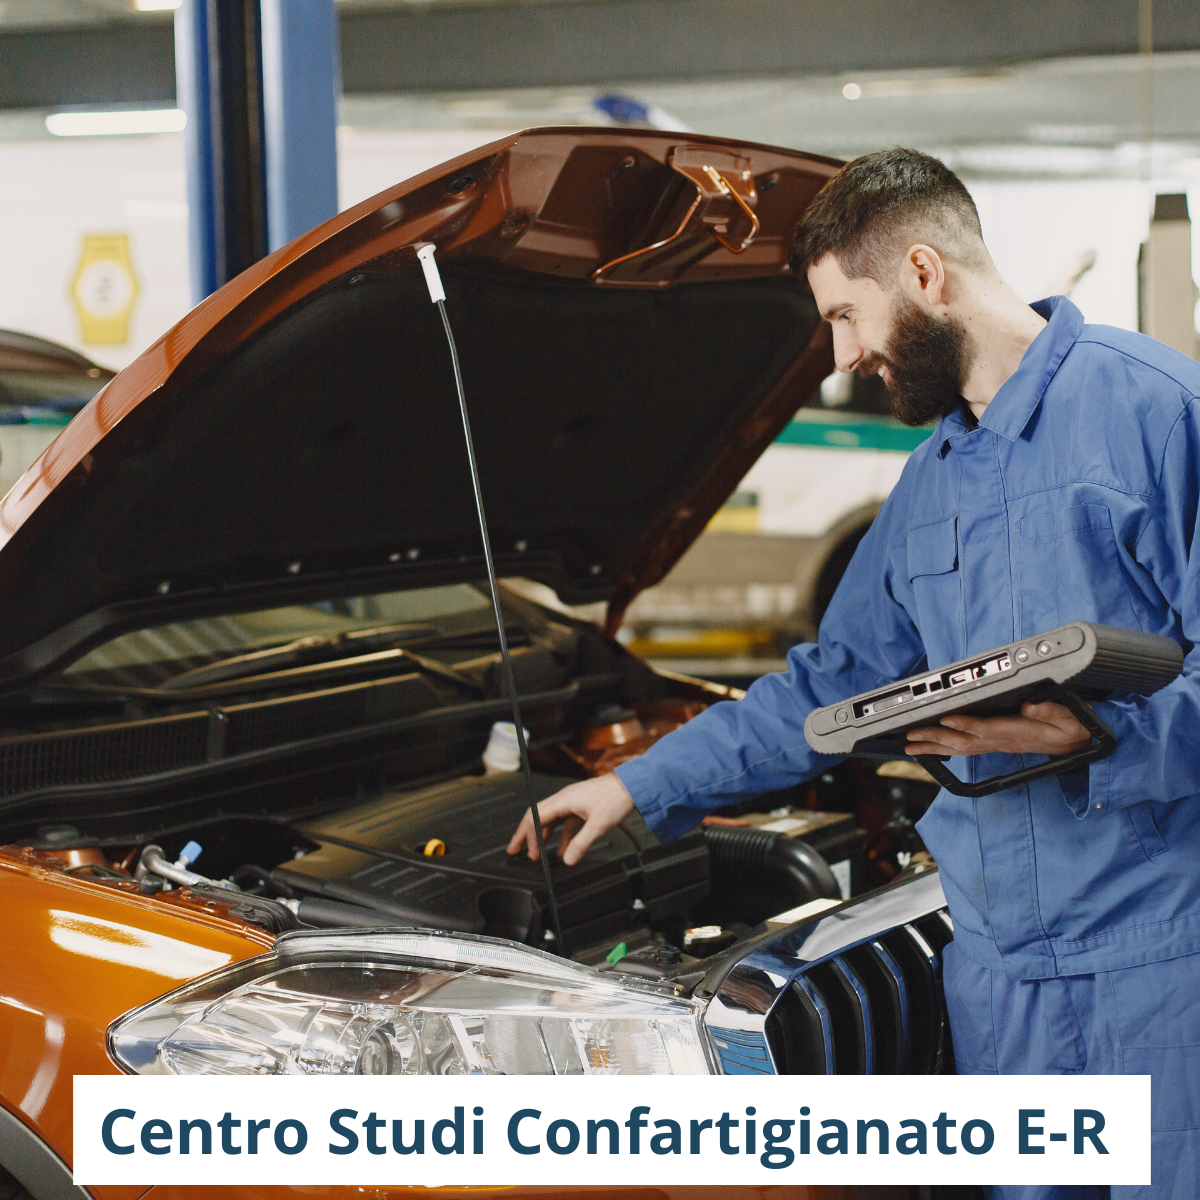 Centro studi ricerca filiera auto nazionale emilia romagna automotive gran premio monza formula 1 confartigianato